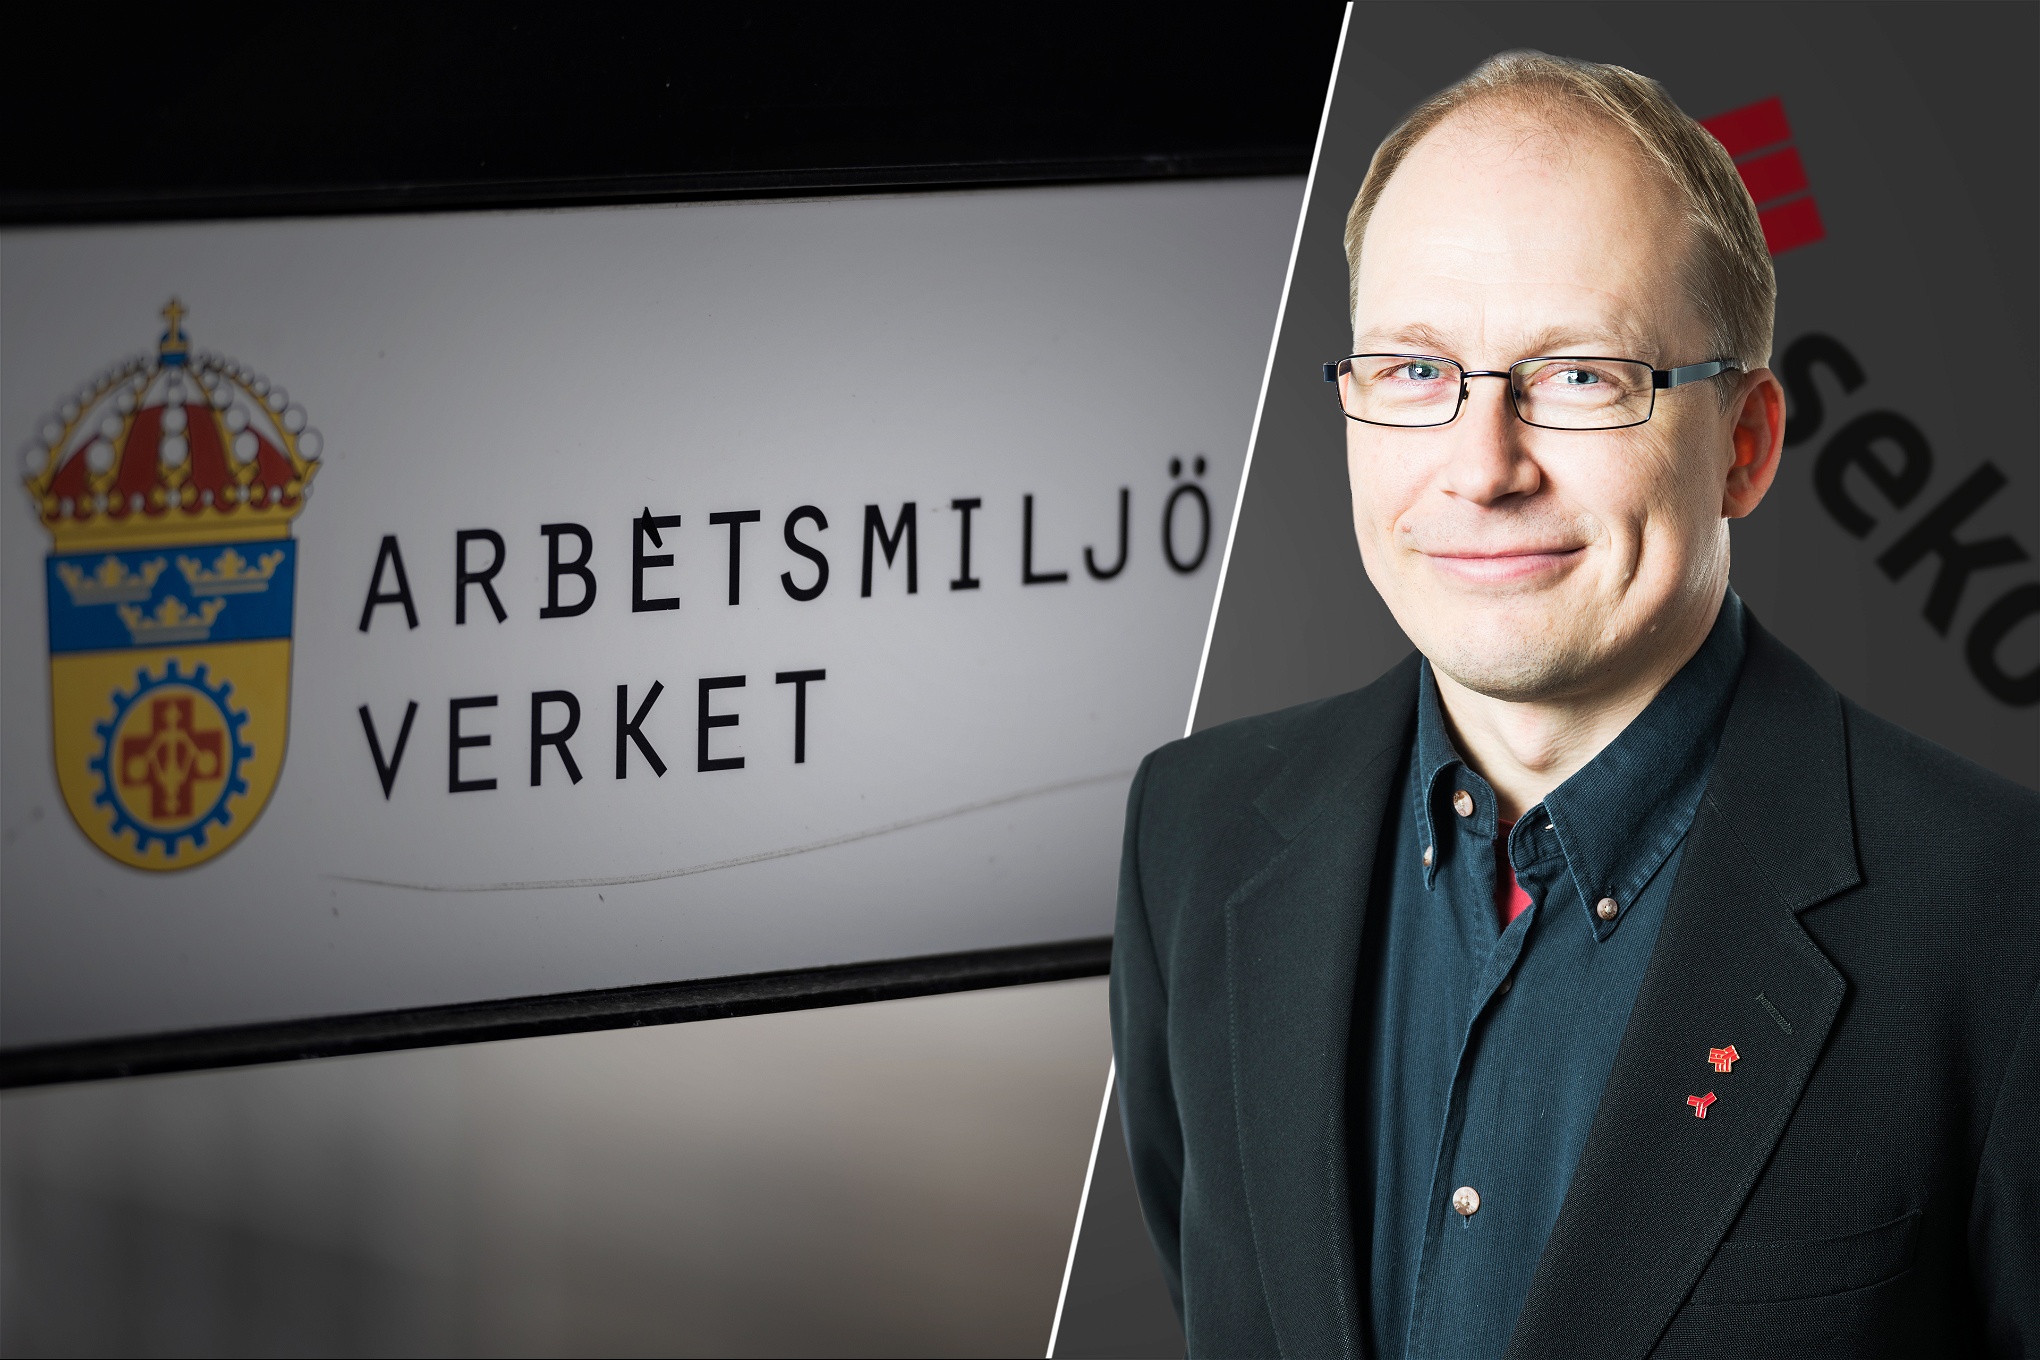 Montage: Seko Stockholms Patrik Öhrnell framför Arbetsmiljöverkets skylt